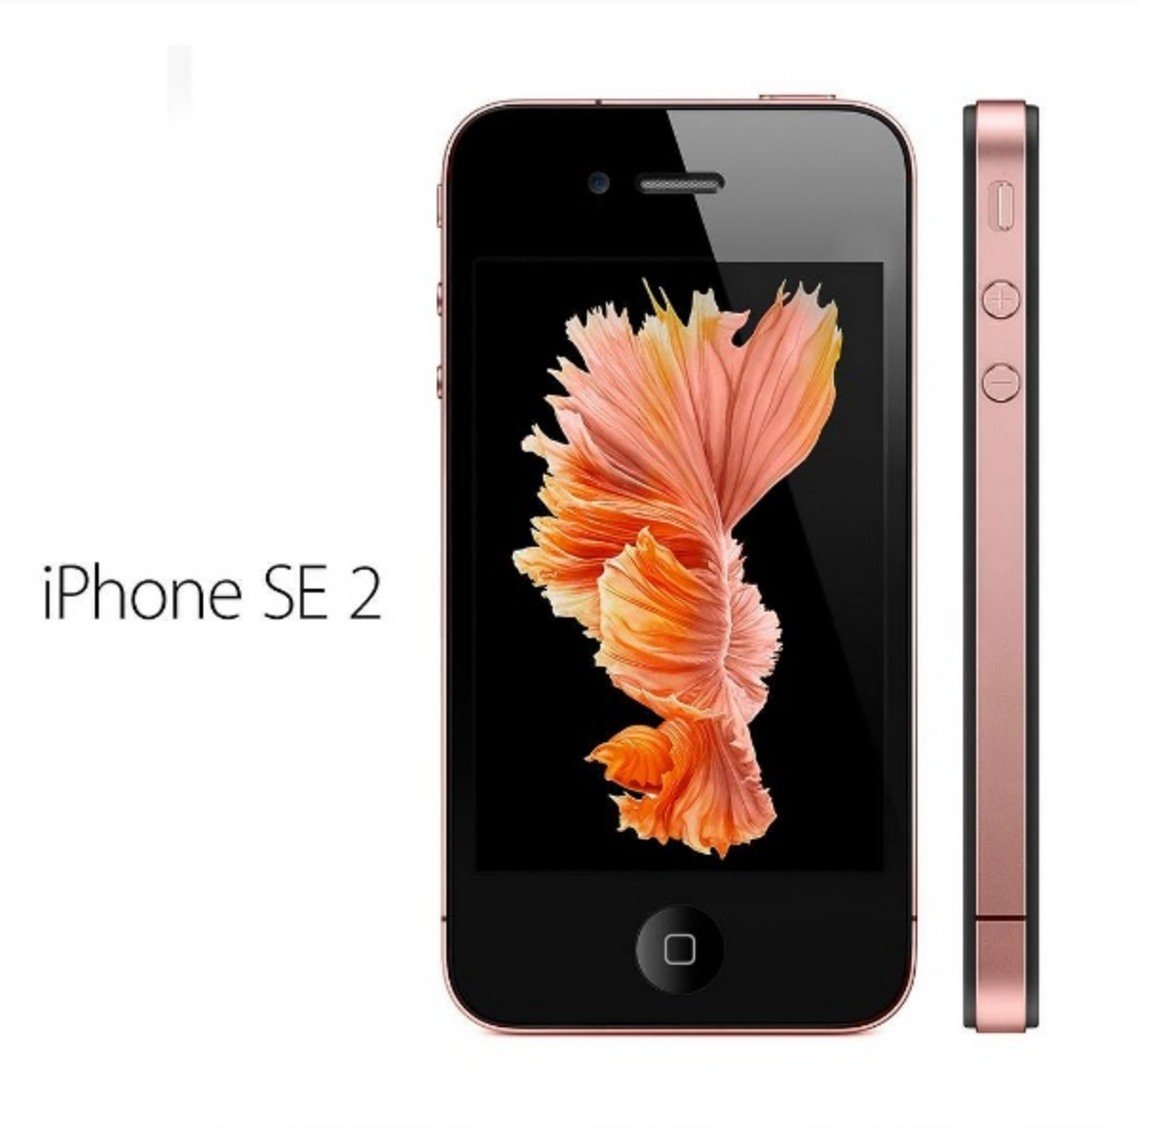 Друга новост от Apple ще бъде iPhone SE 2, по-малката и по-евтина алтернатива на iPhone 8. Моделът ще се продава за около 400 долара. Дизайнът му към момента не е напълно ясен и може да претърпи промени, но характеристиките му са известни. Според слуховете A9 чипът ще бъде заменен с А10 чип, който вече е познат от iPhone 7. Не се знае кога ще бъде достъпен на пазара.

